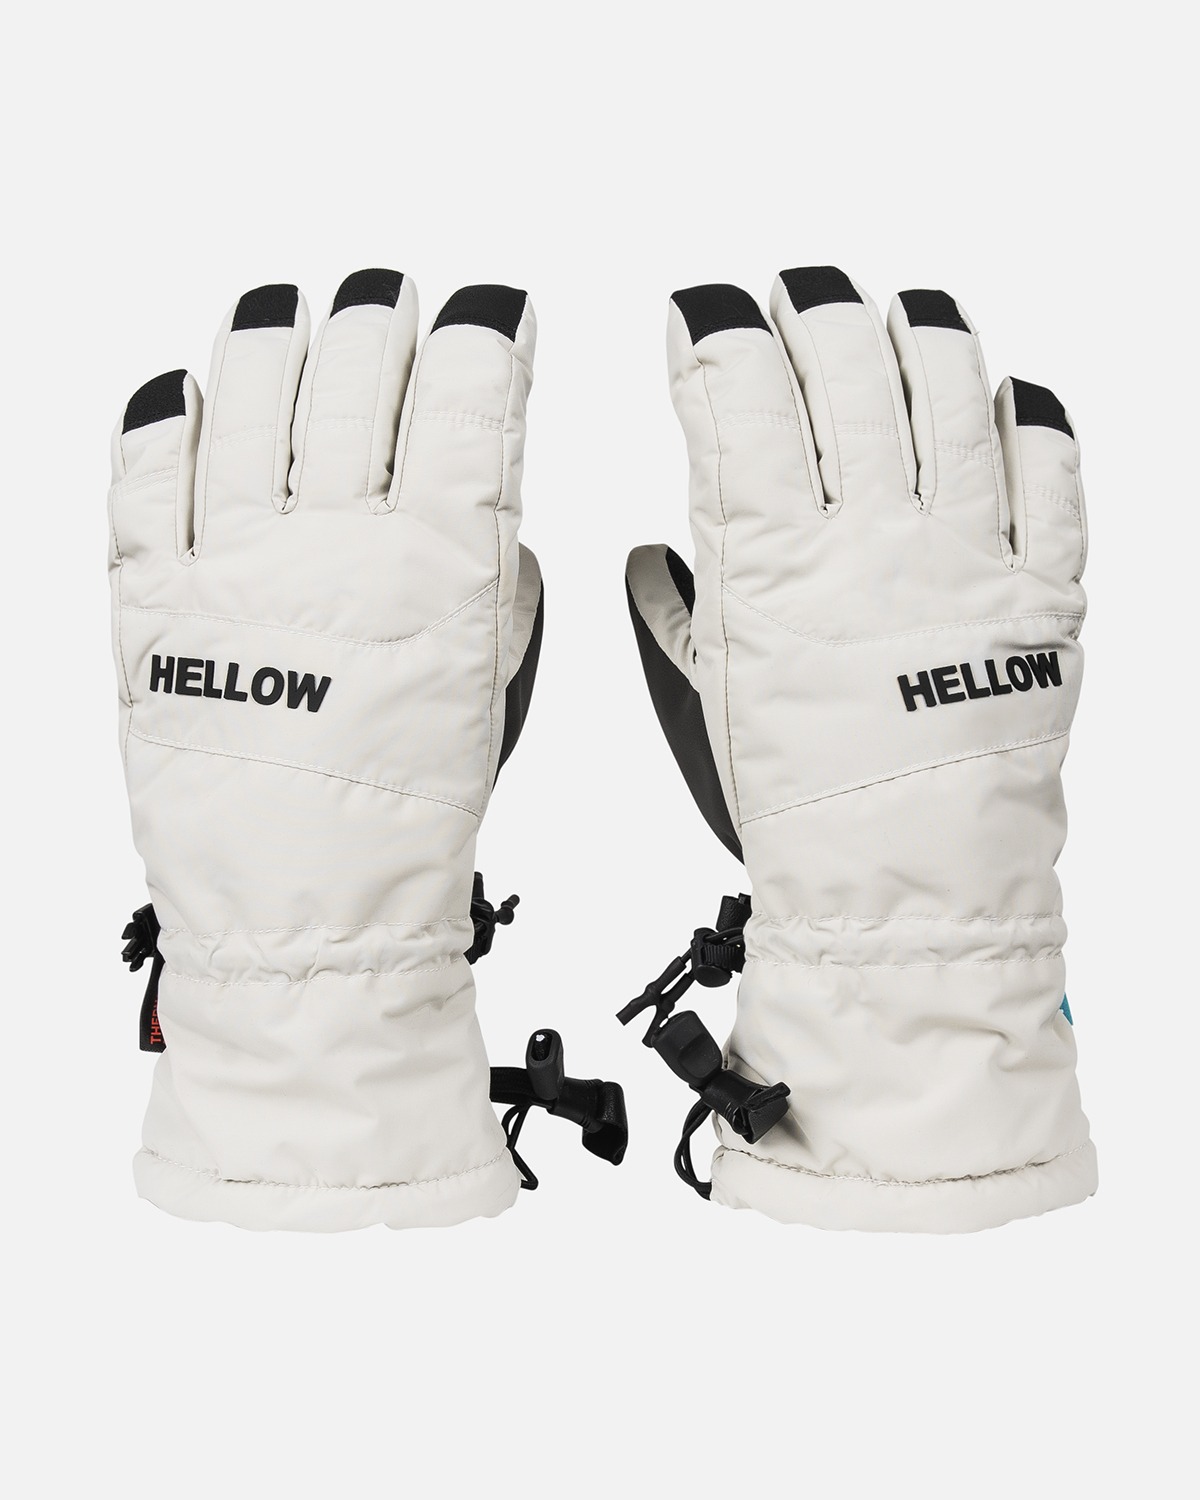 Hellow orda glove 2223 - bone